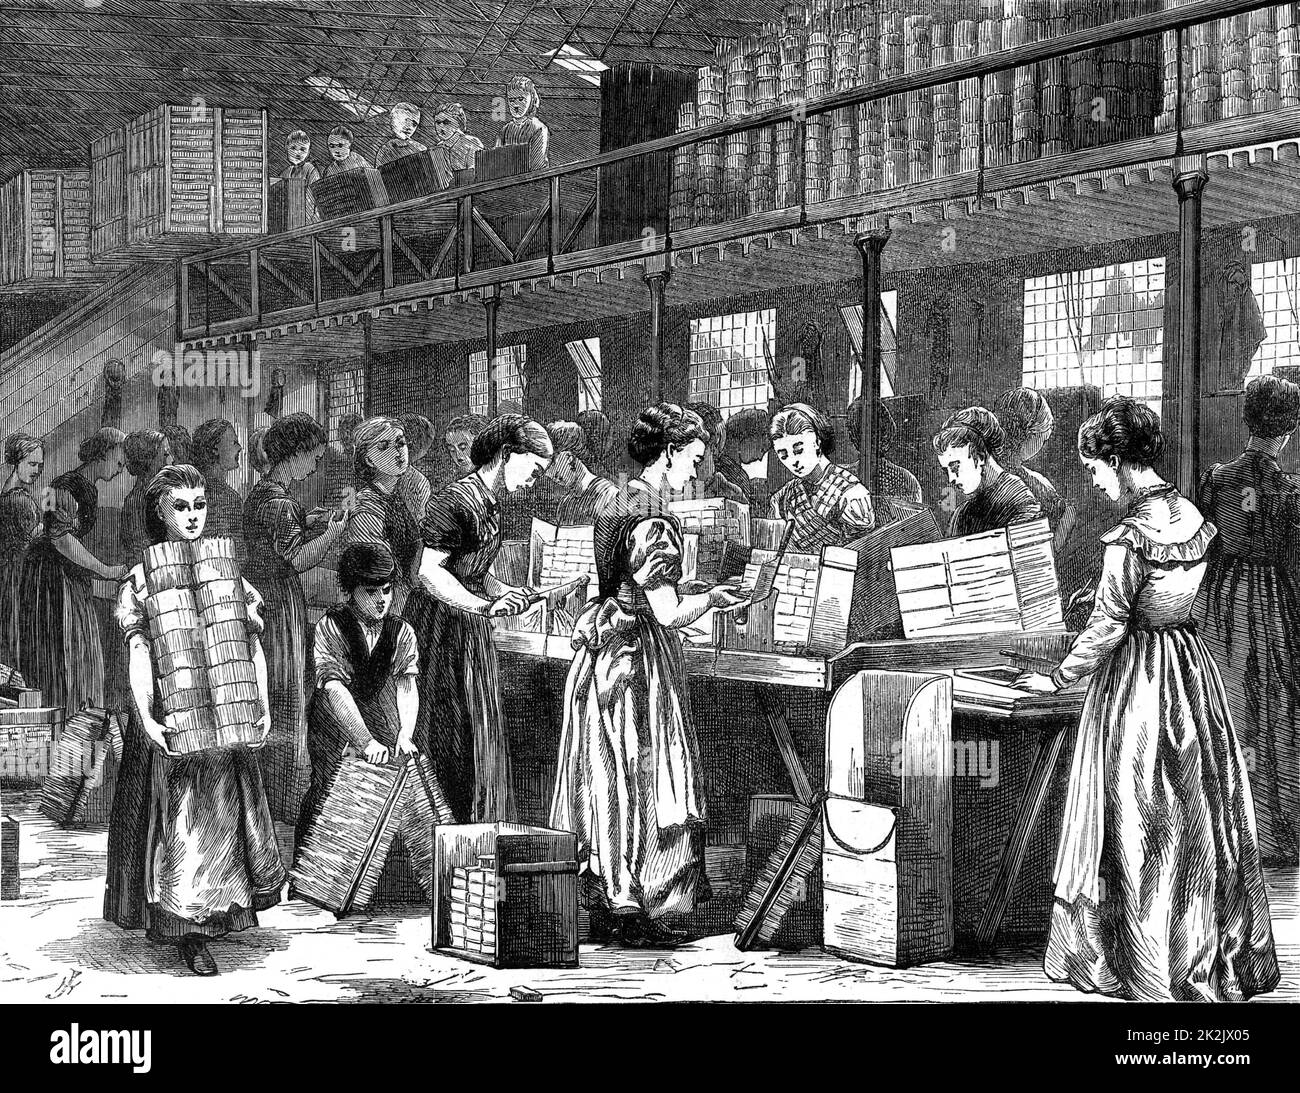 Donne e ragazze e un ragazzo al lavoro nella fabbrica di fiammifero di Bryant & May, Fairfield Road, Bow, Londra. Da 'The Illustrated London News' (Londra, 1871). Incisione. Foto Stock